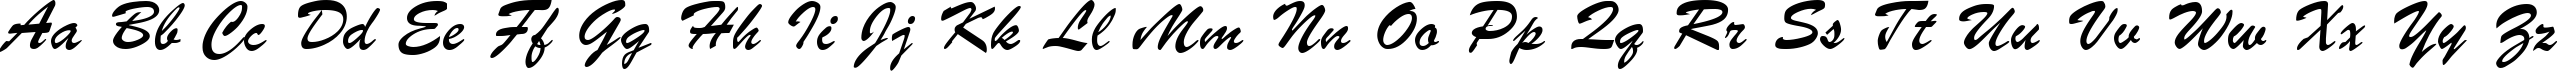 Пример написания английского алфавита шрифтом font373